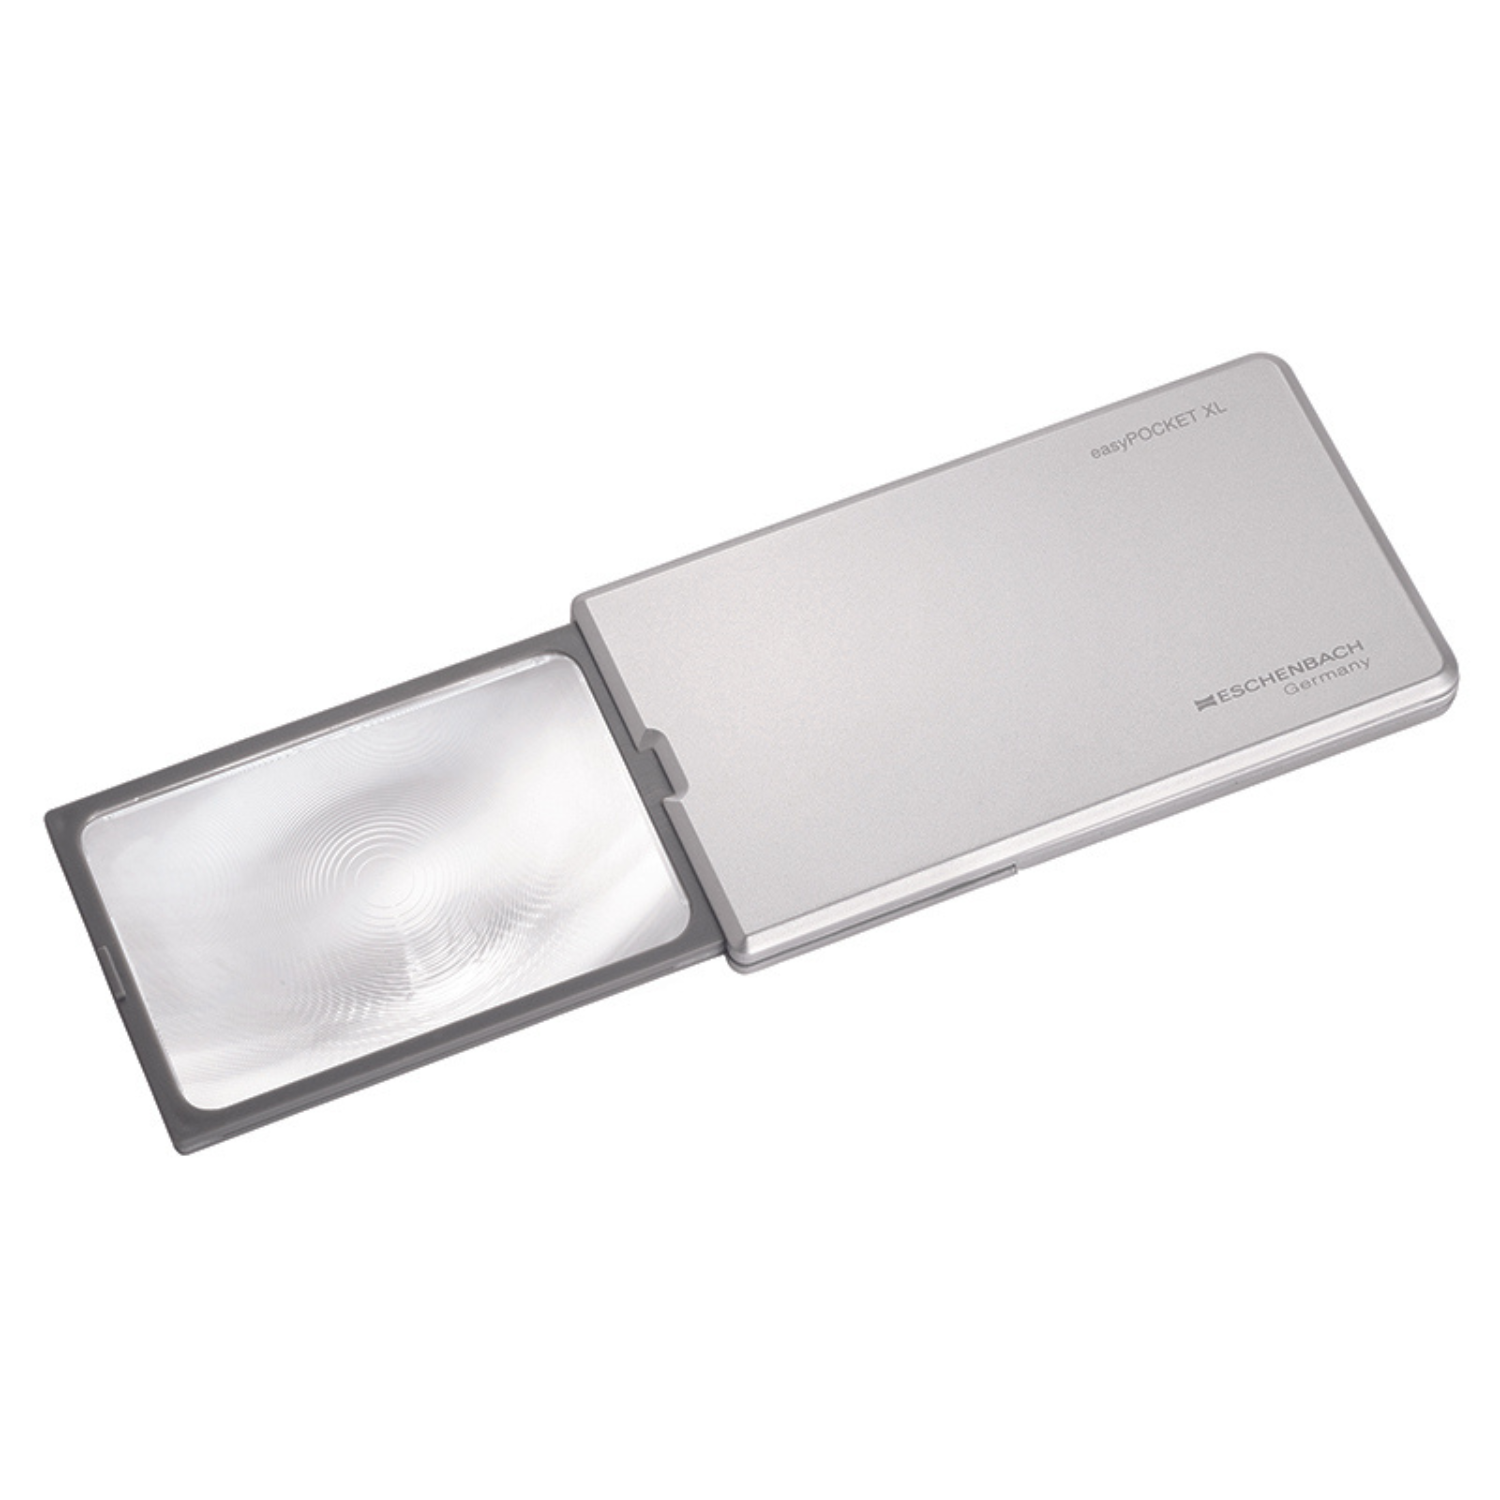 Royal SM10 Handheld Illuminated Pocket Magnifier, Pack of 2 - Royal